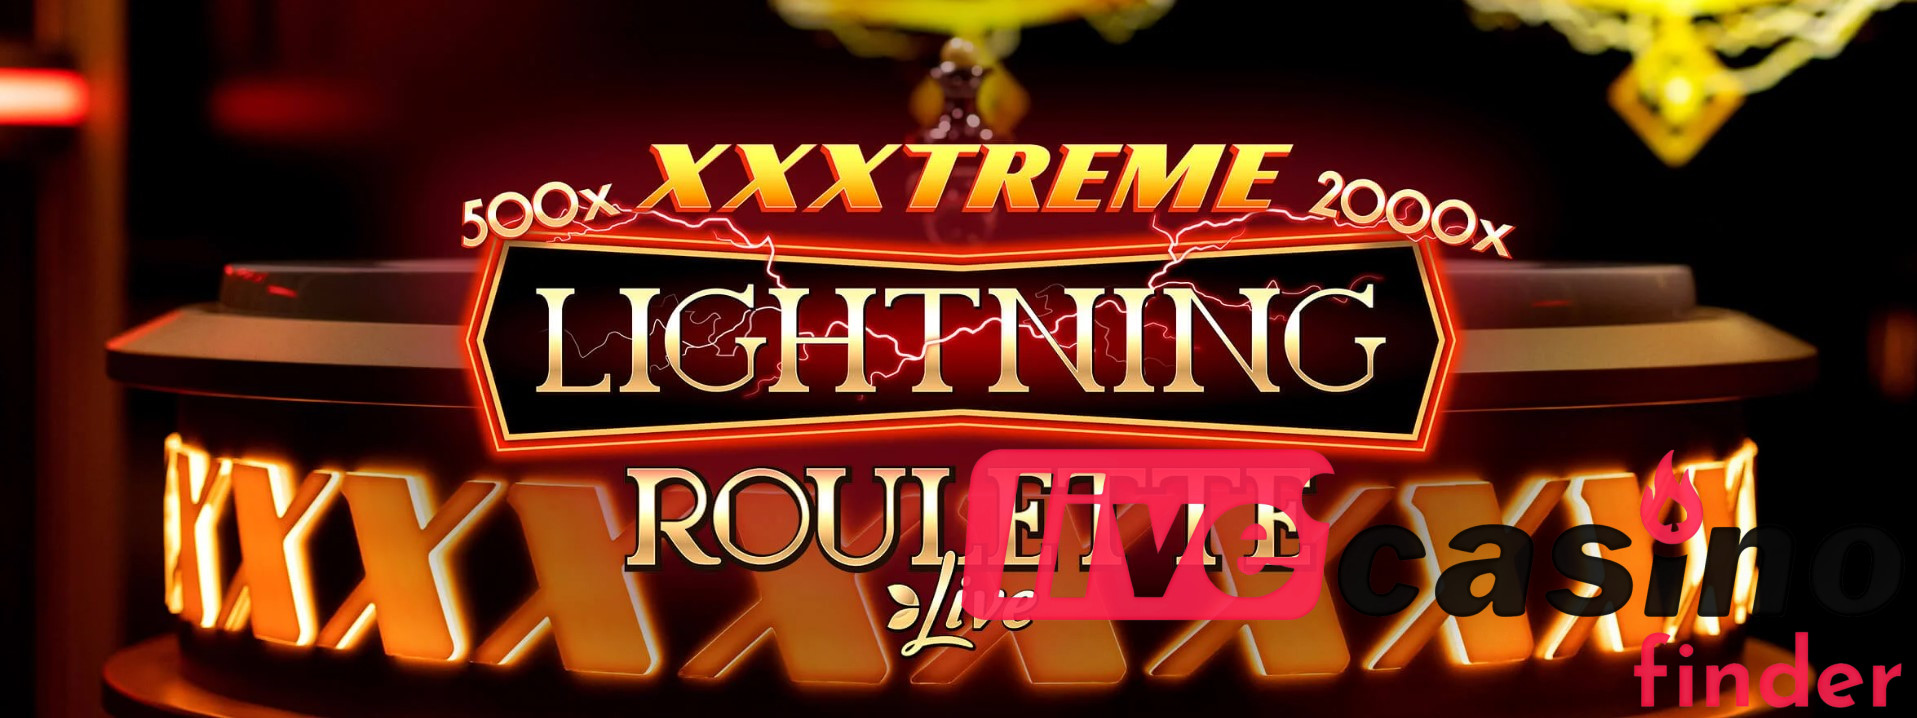 Живая игра XXXTreme Lightning Roulette.